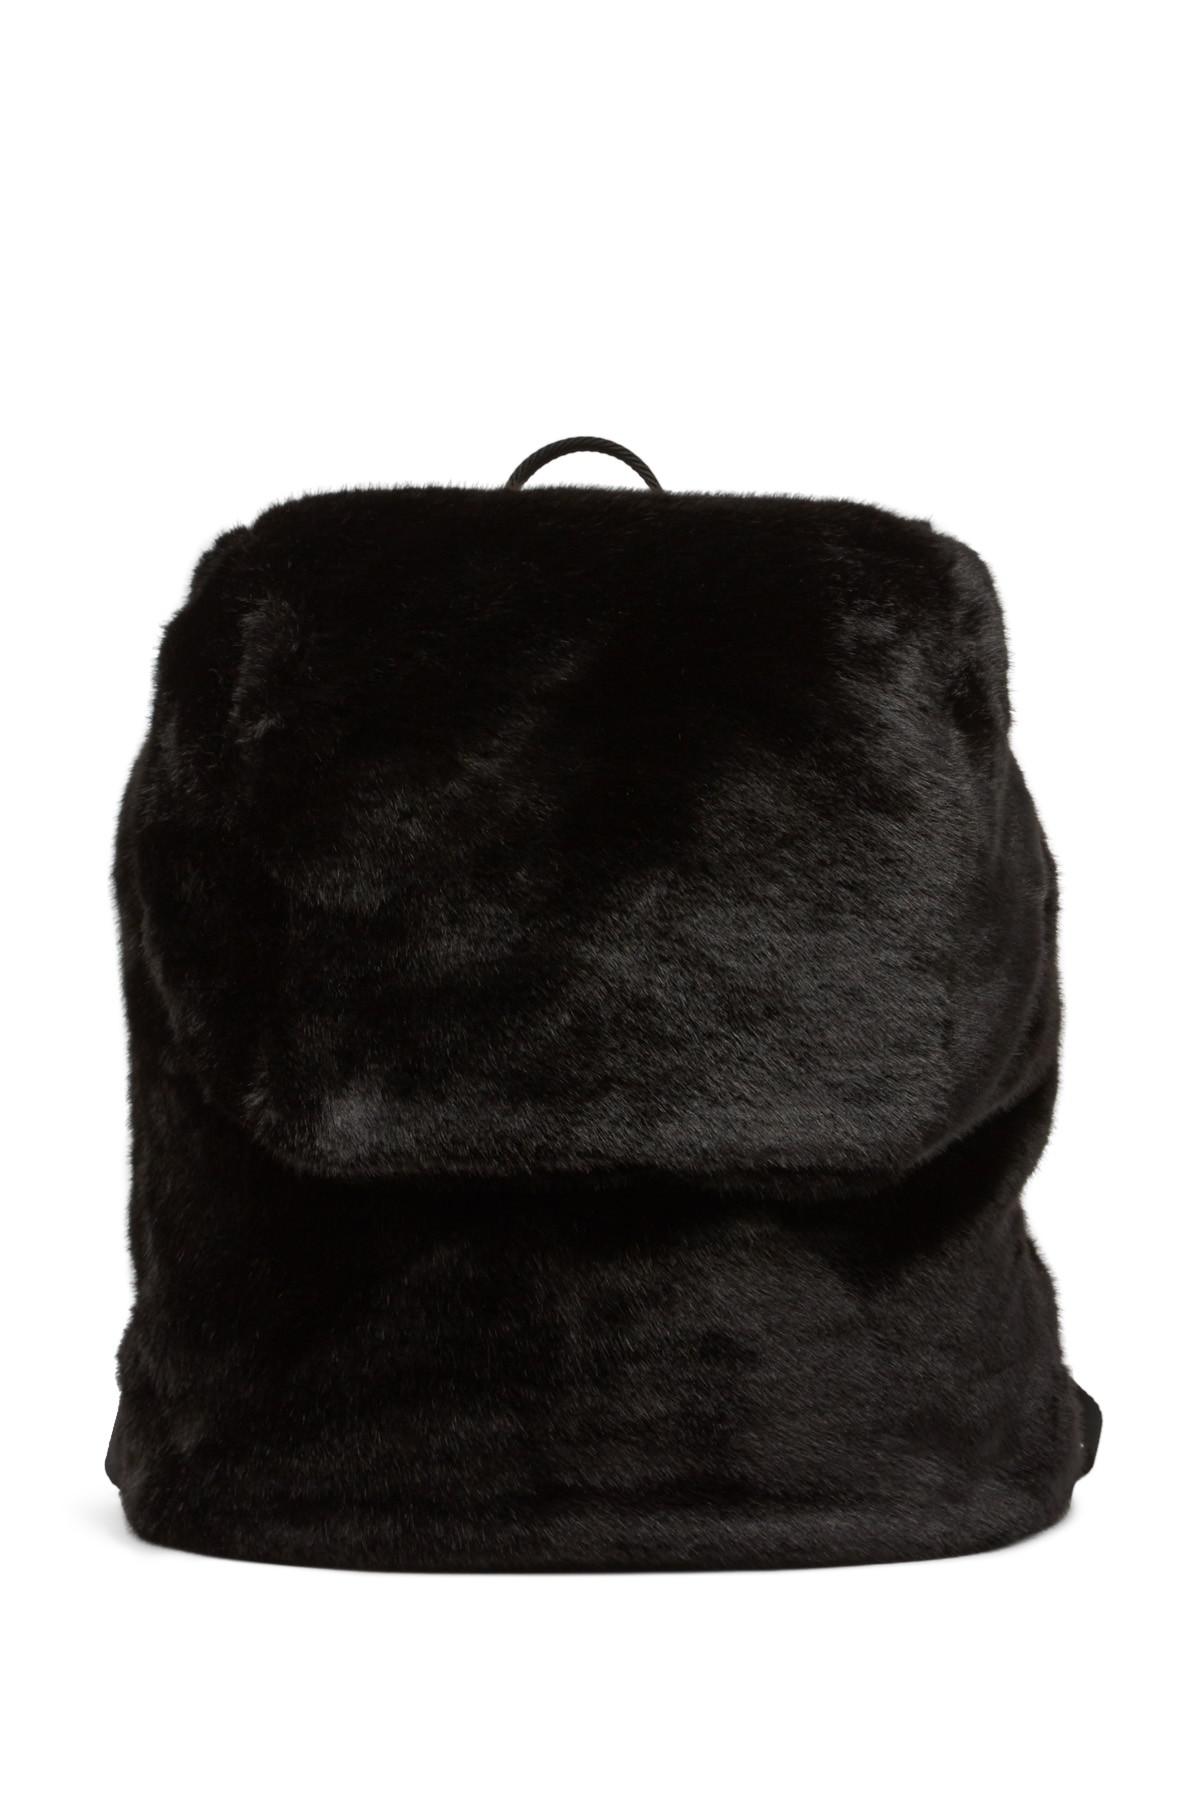 PUMA Fenty By Rihanna Faux Fur Backpack in Black | Lyst